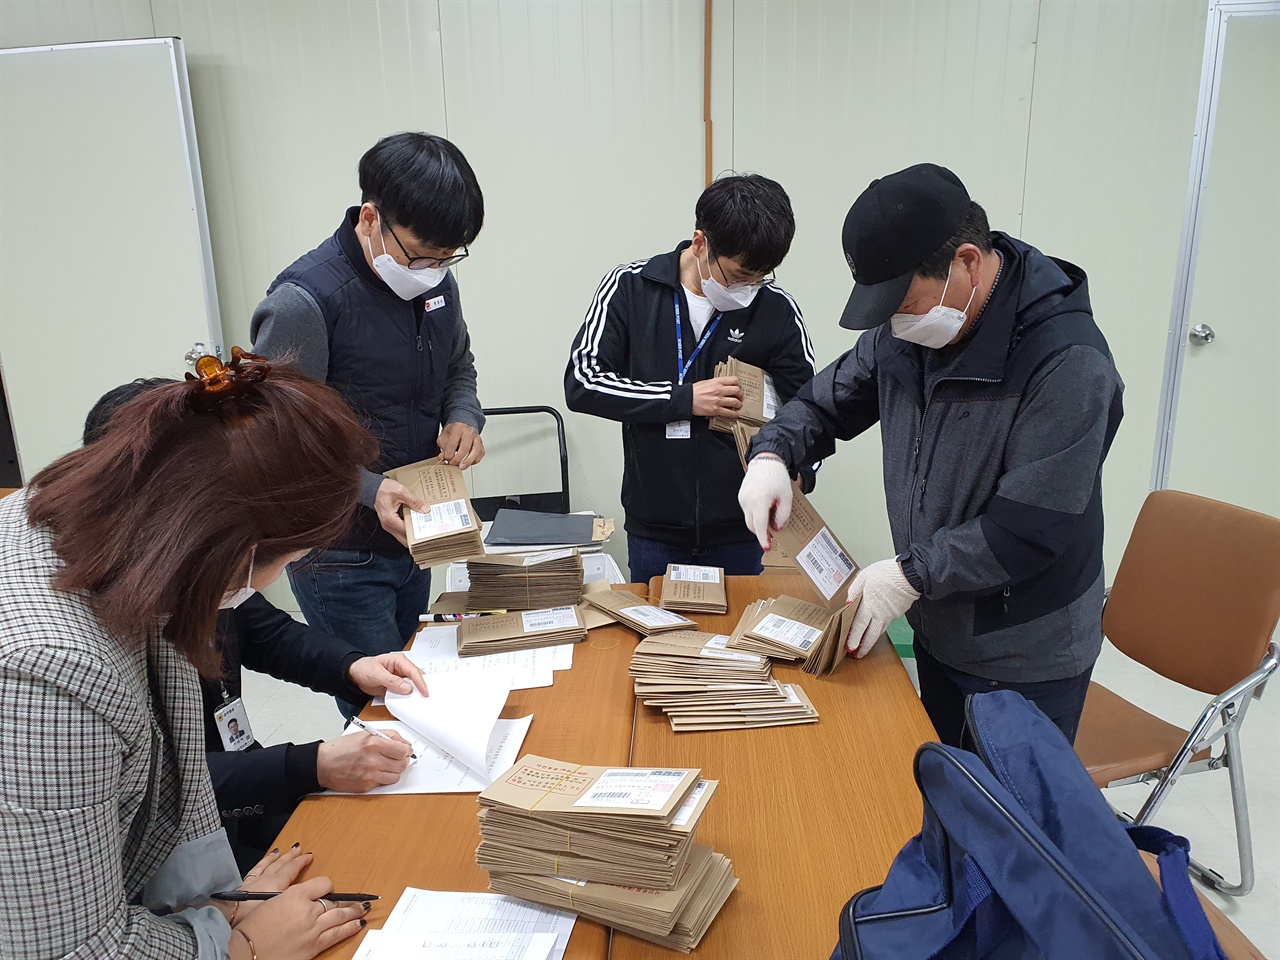 11일 홍성군선관위에 도착한 관외투표지를 참관인 입회하에 해당 우체국으로 분류하고 있다.